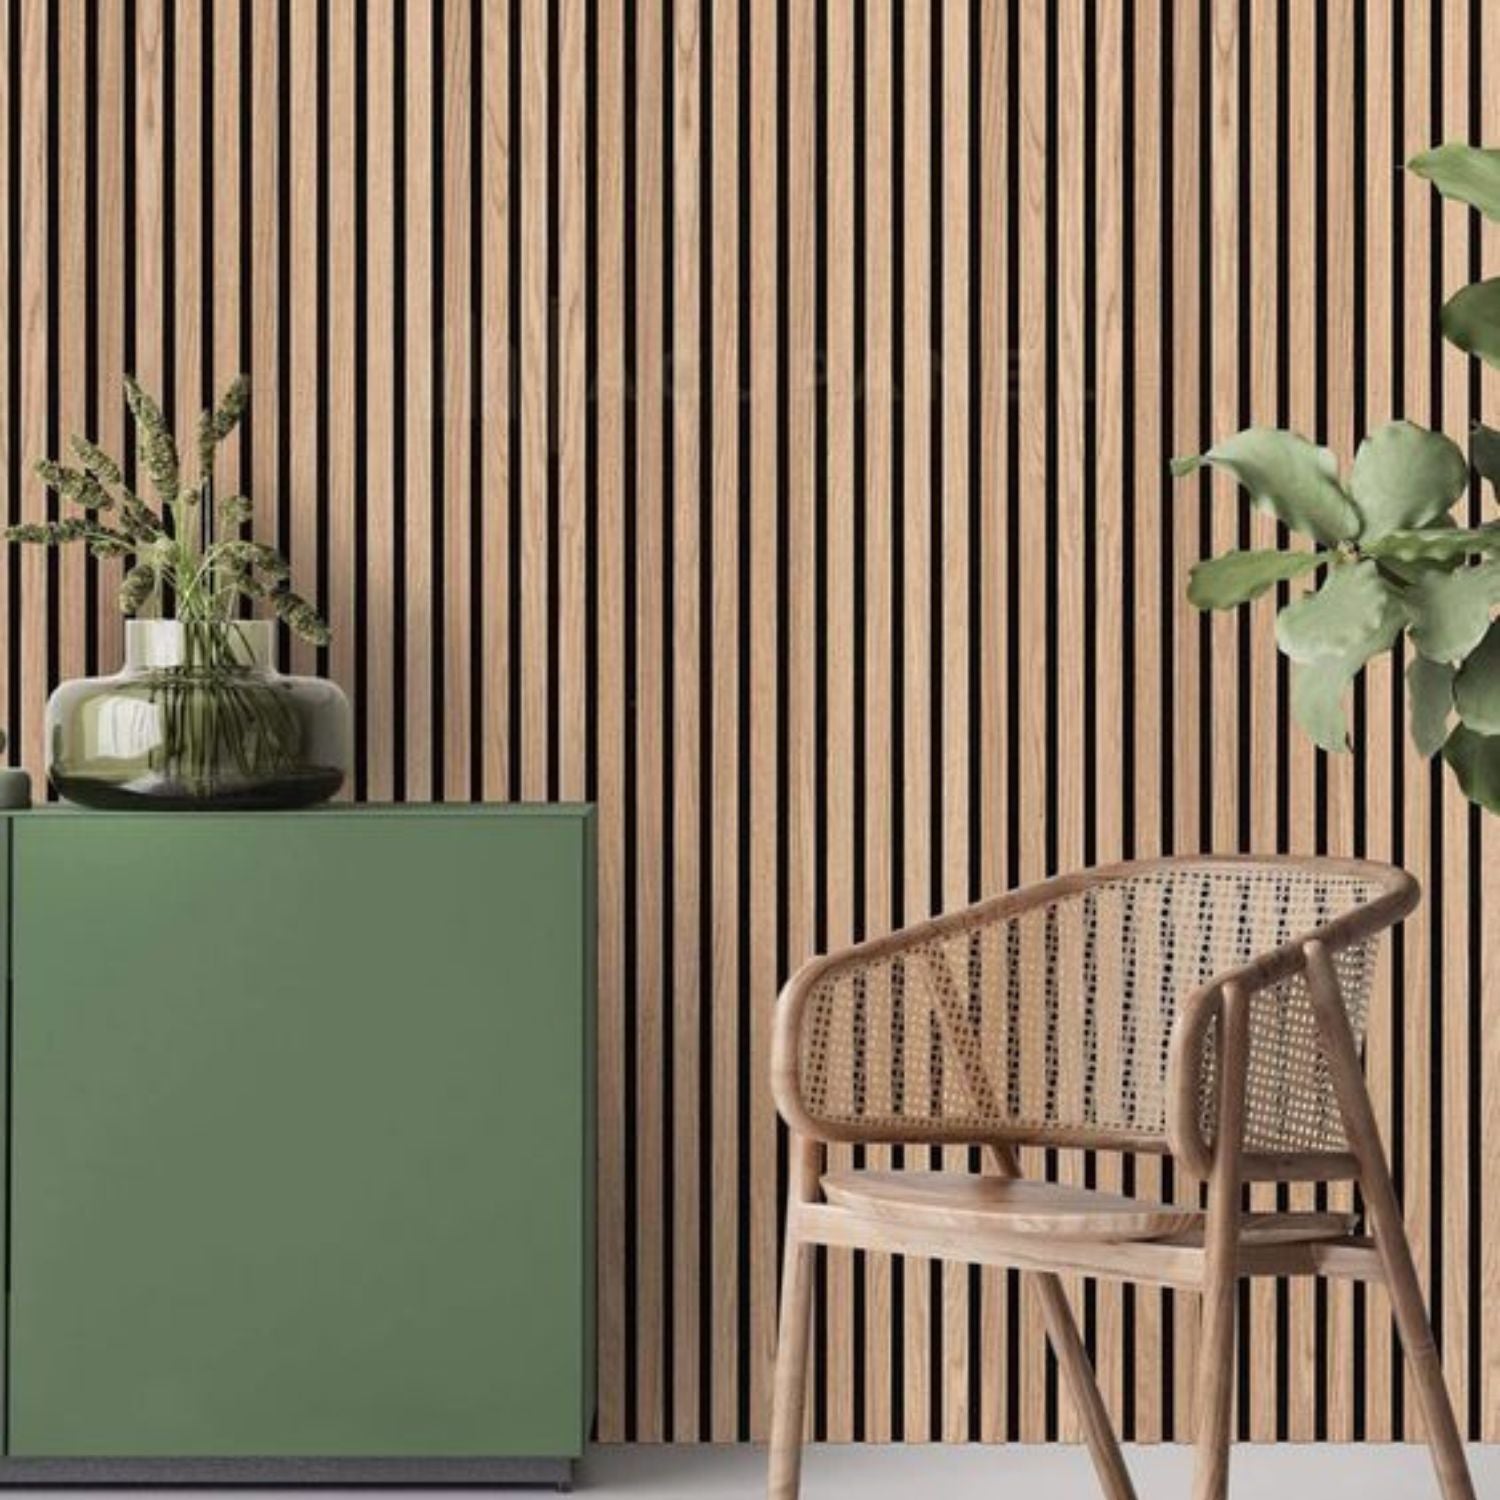 Panel acústico alistonado de madera para sala de espera en una clínica -  EliAcoustic